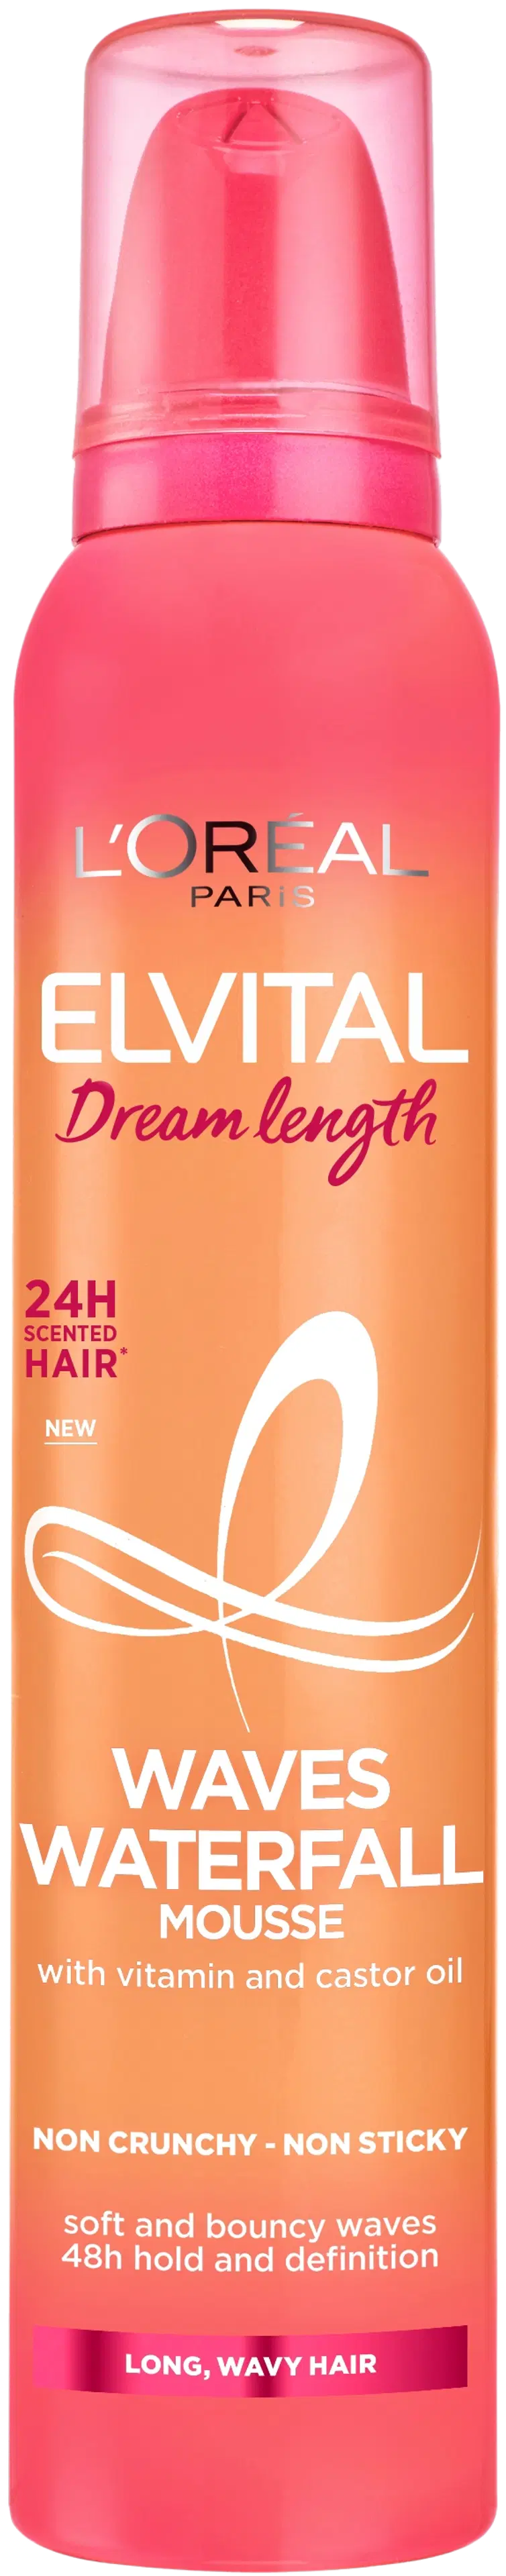 L'Oréal Paris Elvital Dream Length Waves Waterfall Mousse muotoiluvaahto 200ml